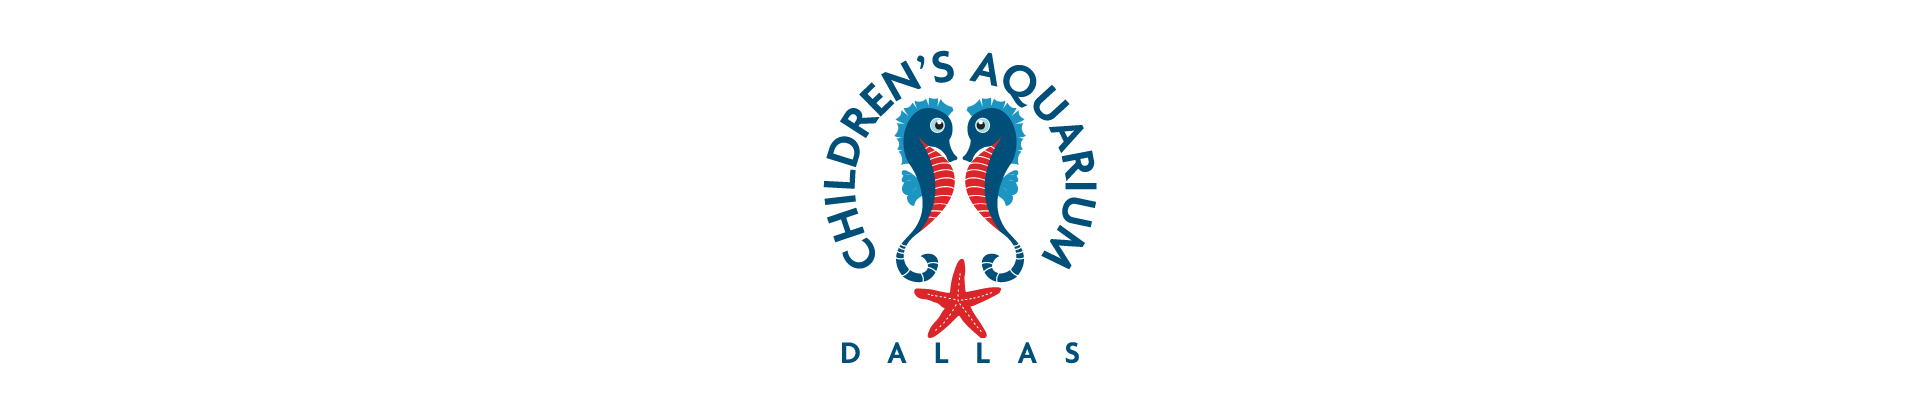 Children’s Aquarium Dallas at Fair Park